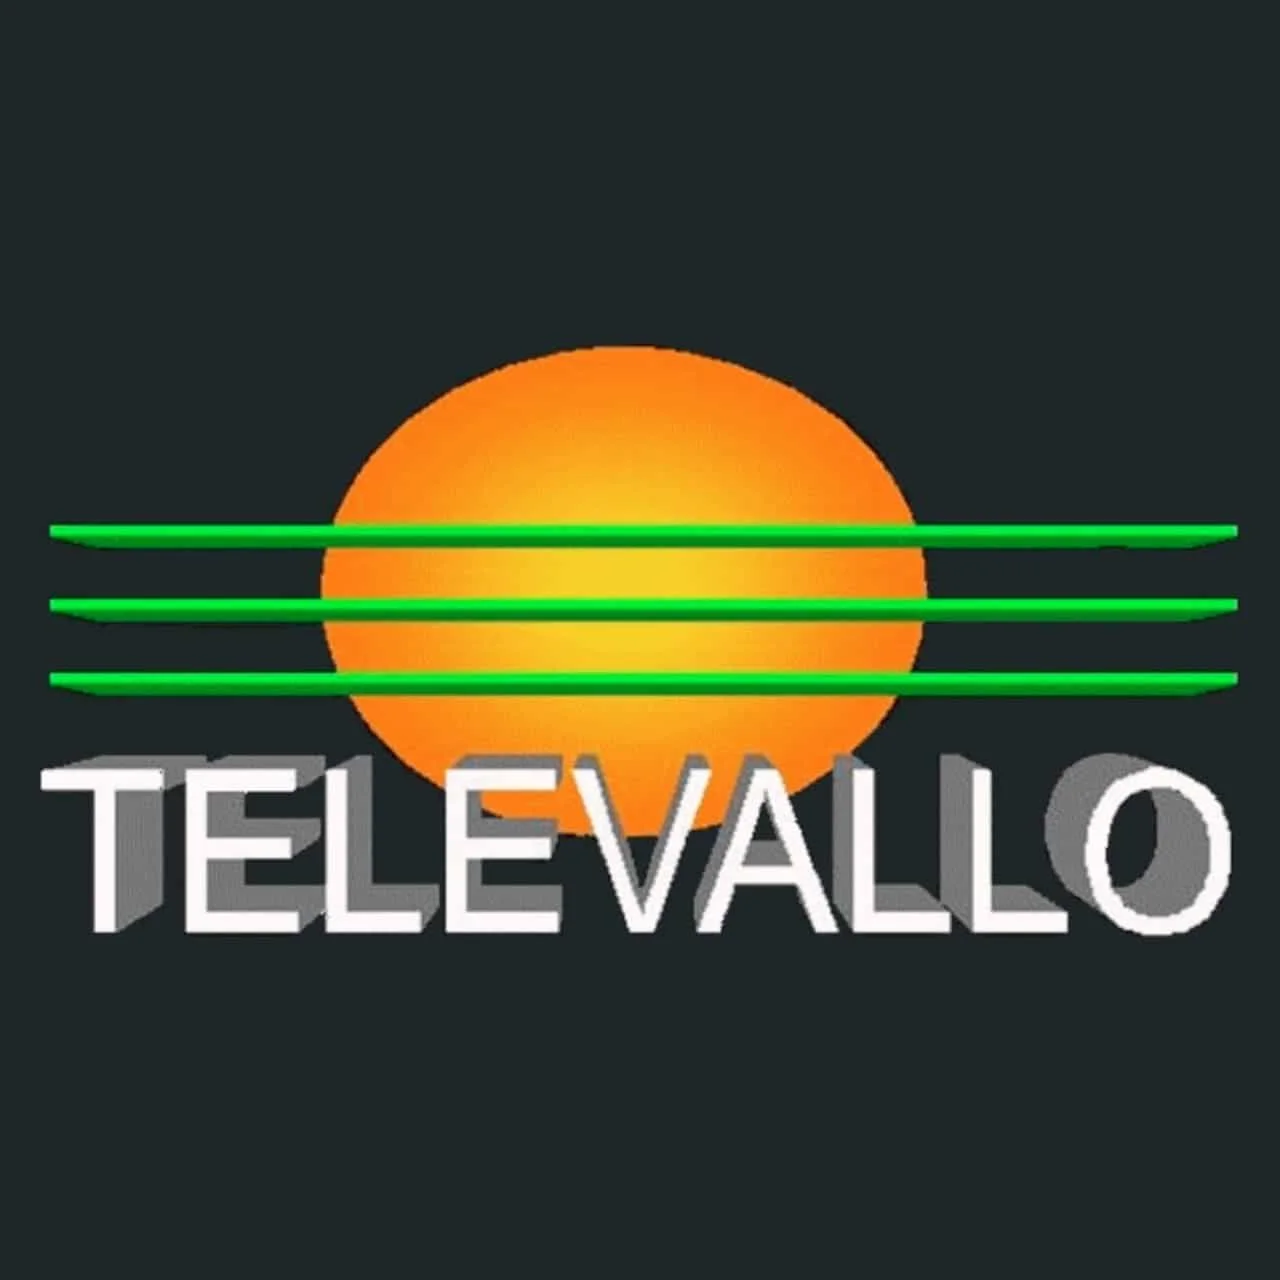 Televallo TV